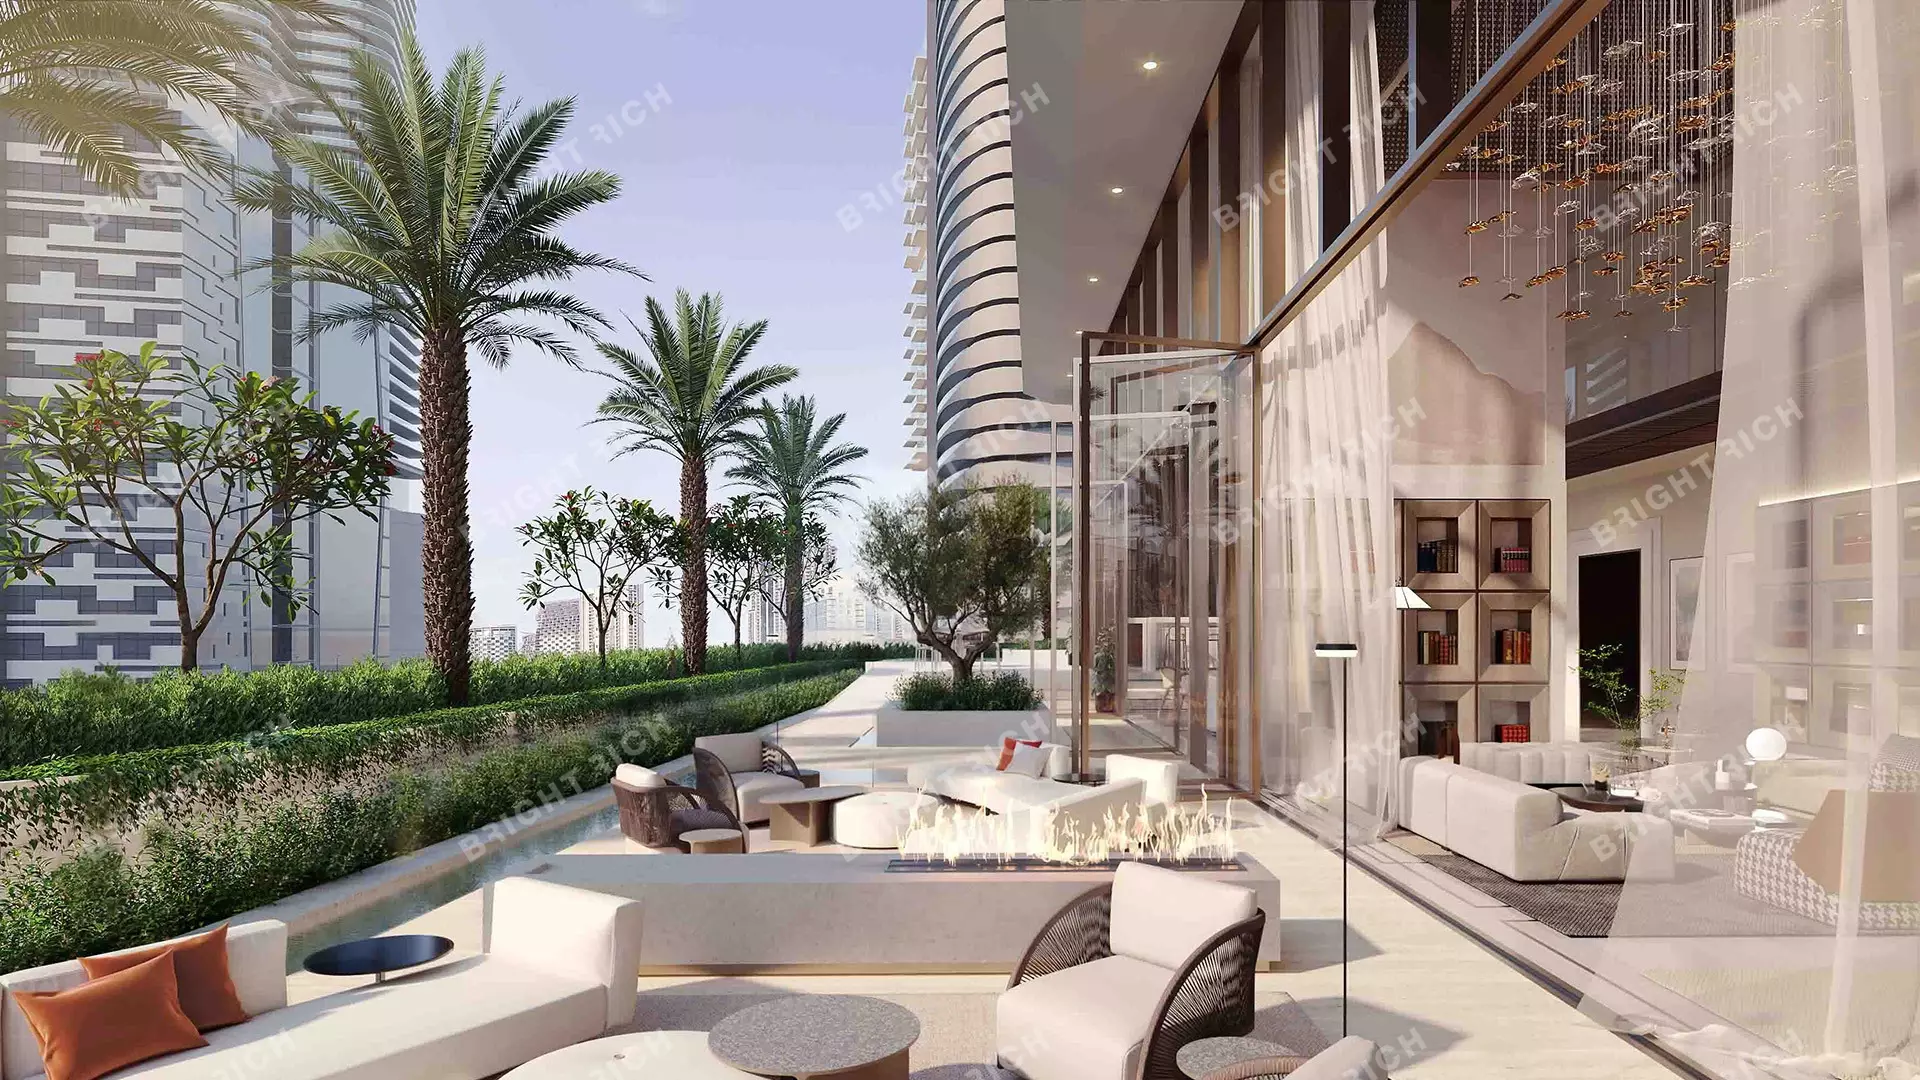 The St. Regis Residences , apart complex in Dubai - 10